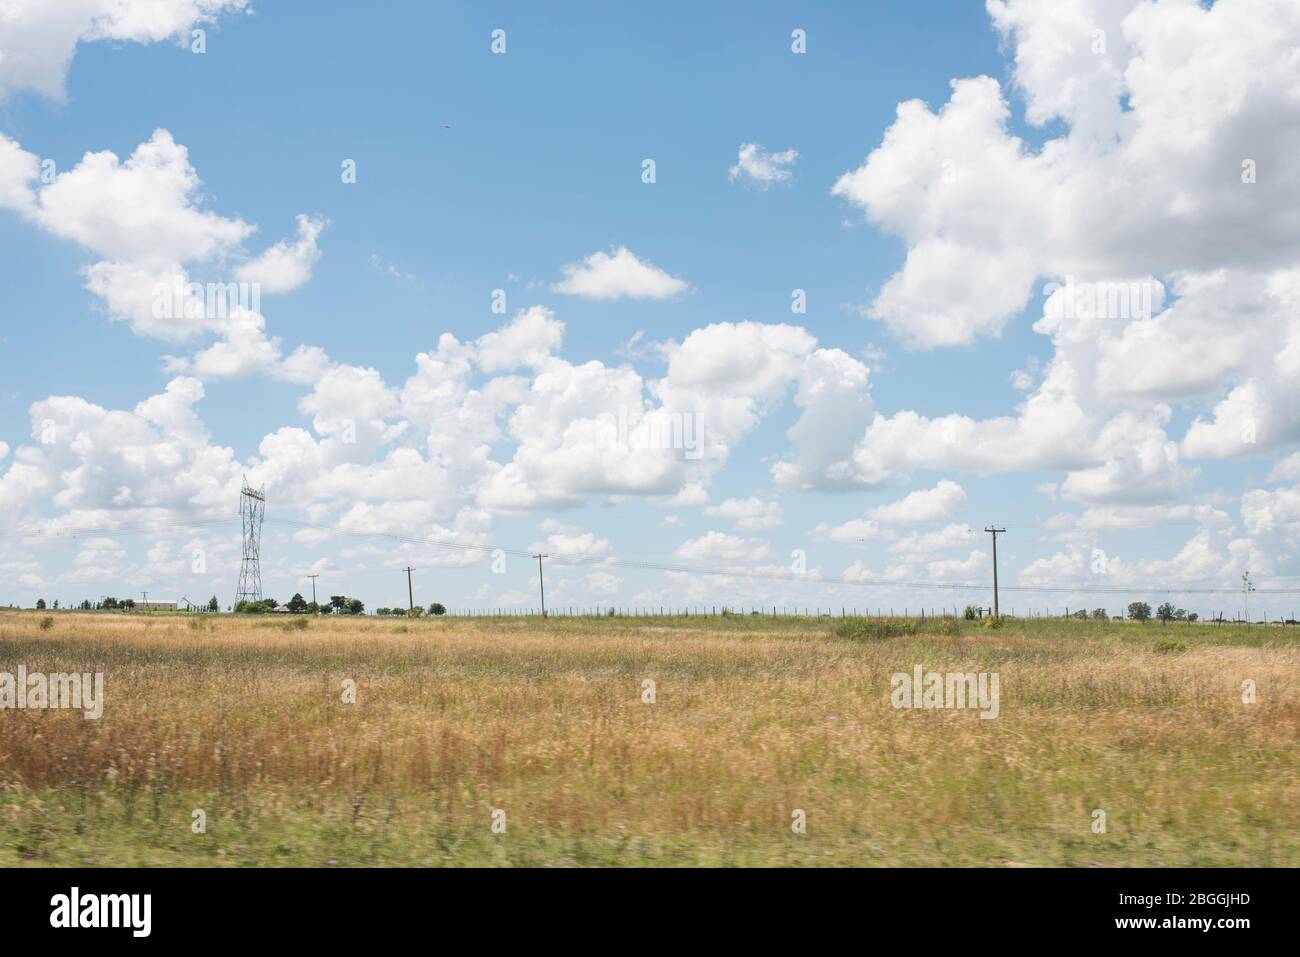 Paysage routier, été, ciel bleu et nuages blancs, lignes électriques et pylônes Banque D'Images